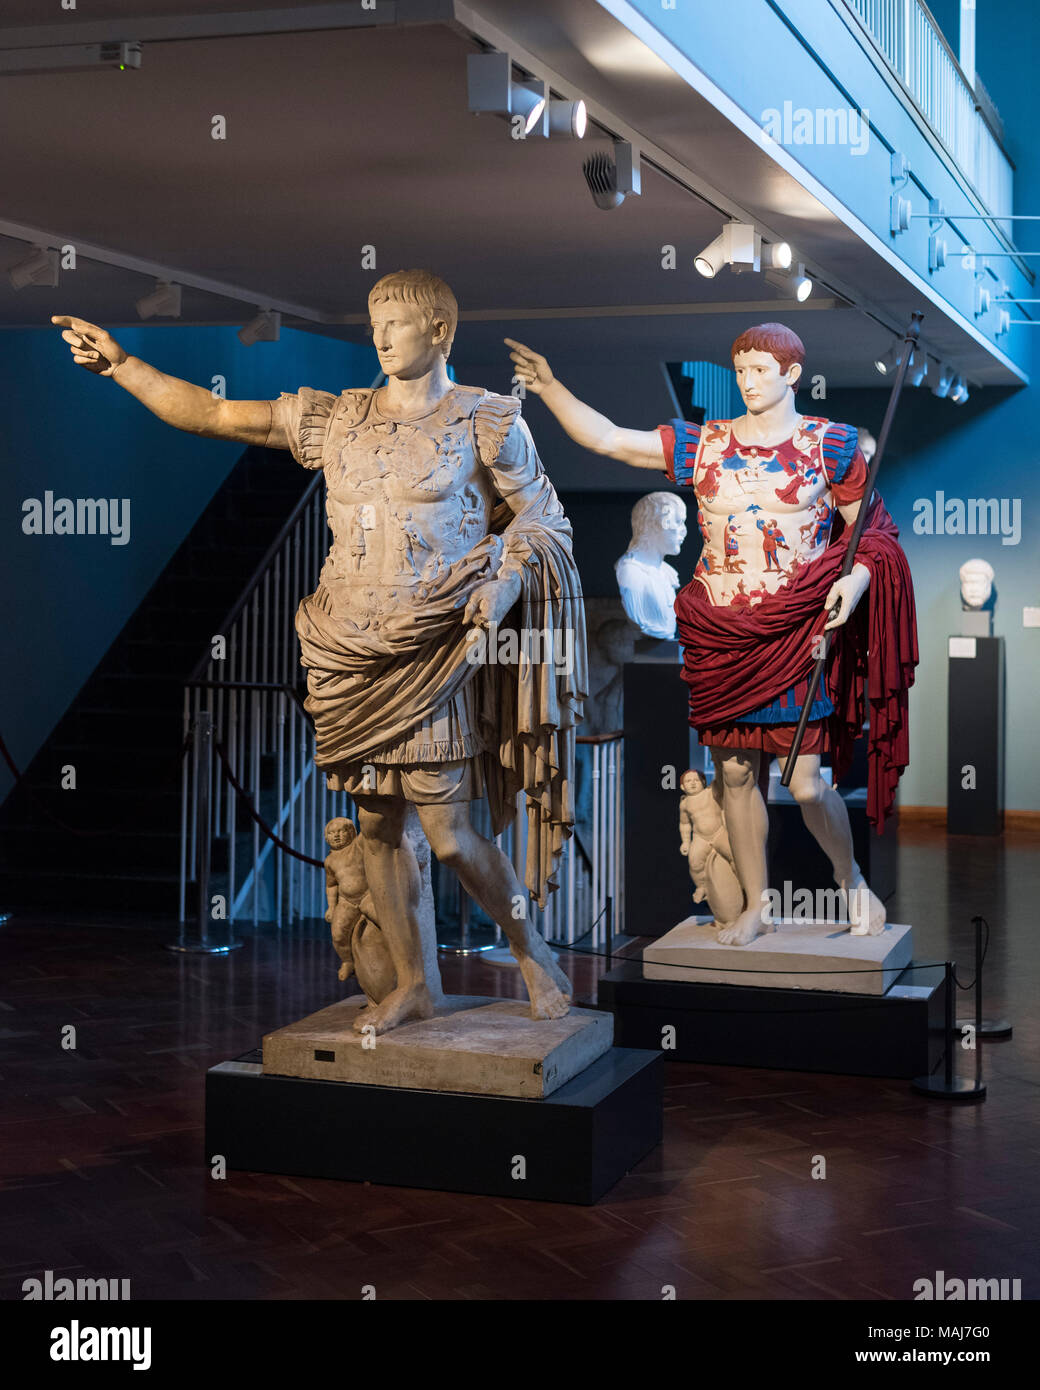 Oxford. L'Angleterre. Plâtre peint copie de la statue de l'empereur romain Auguste de Prima Porta. Ashmolean Museum. Dans cette reconstruction, l'orig Banque D'Images